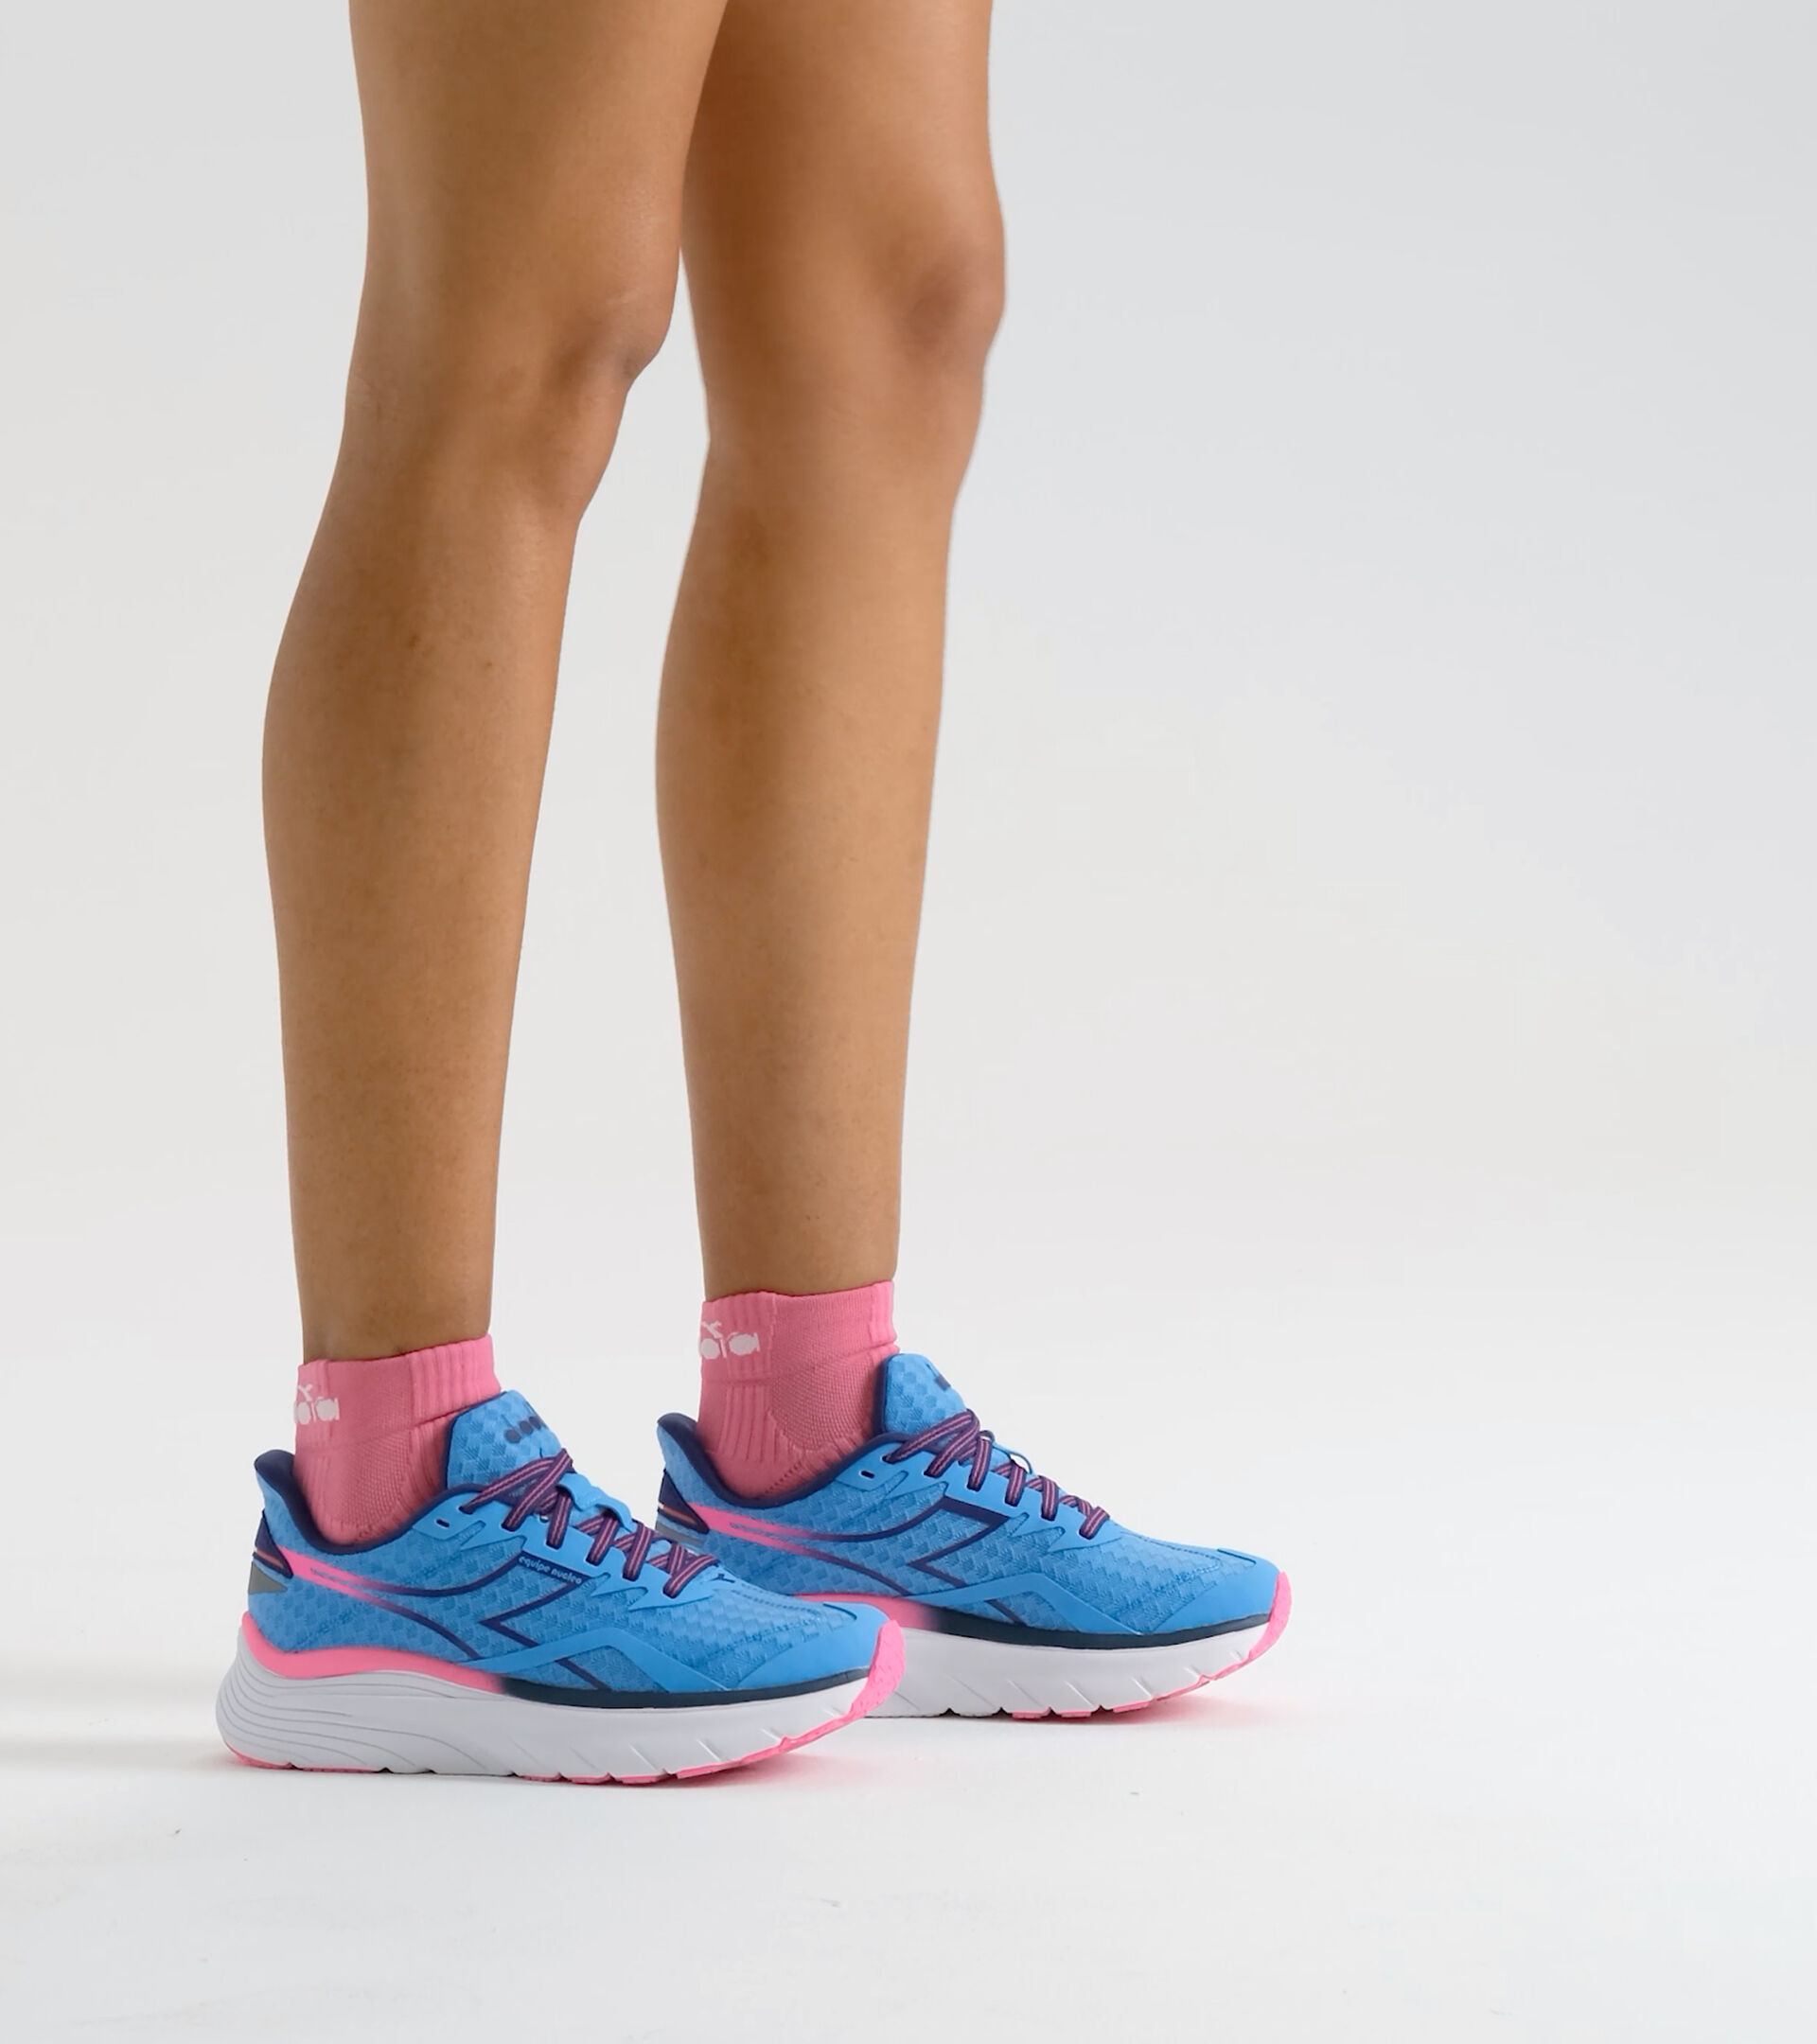 Chaussures de running - Femme EQUIPE NUCLEO W BONNIE BLEU/ROSE FLUO - Diadora